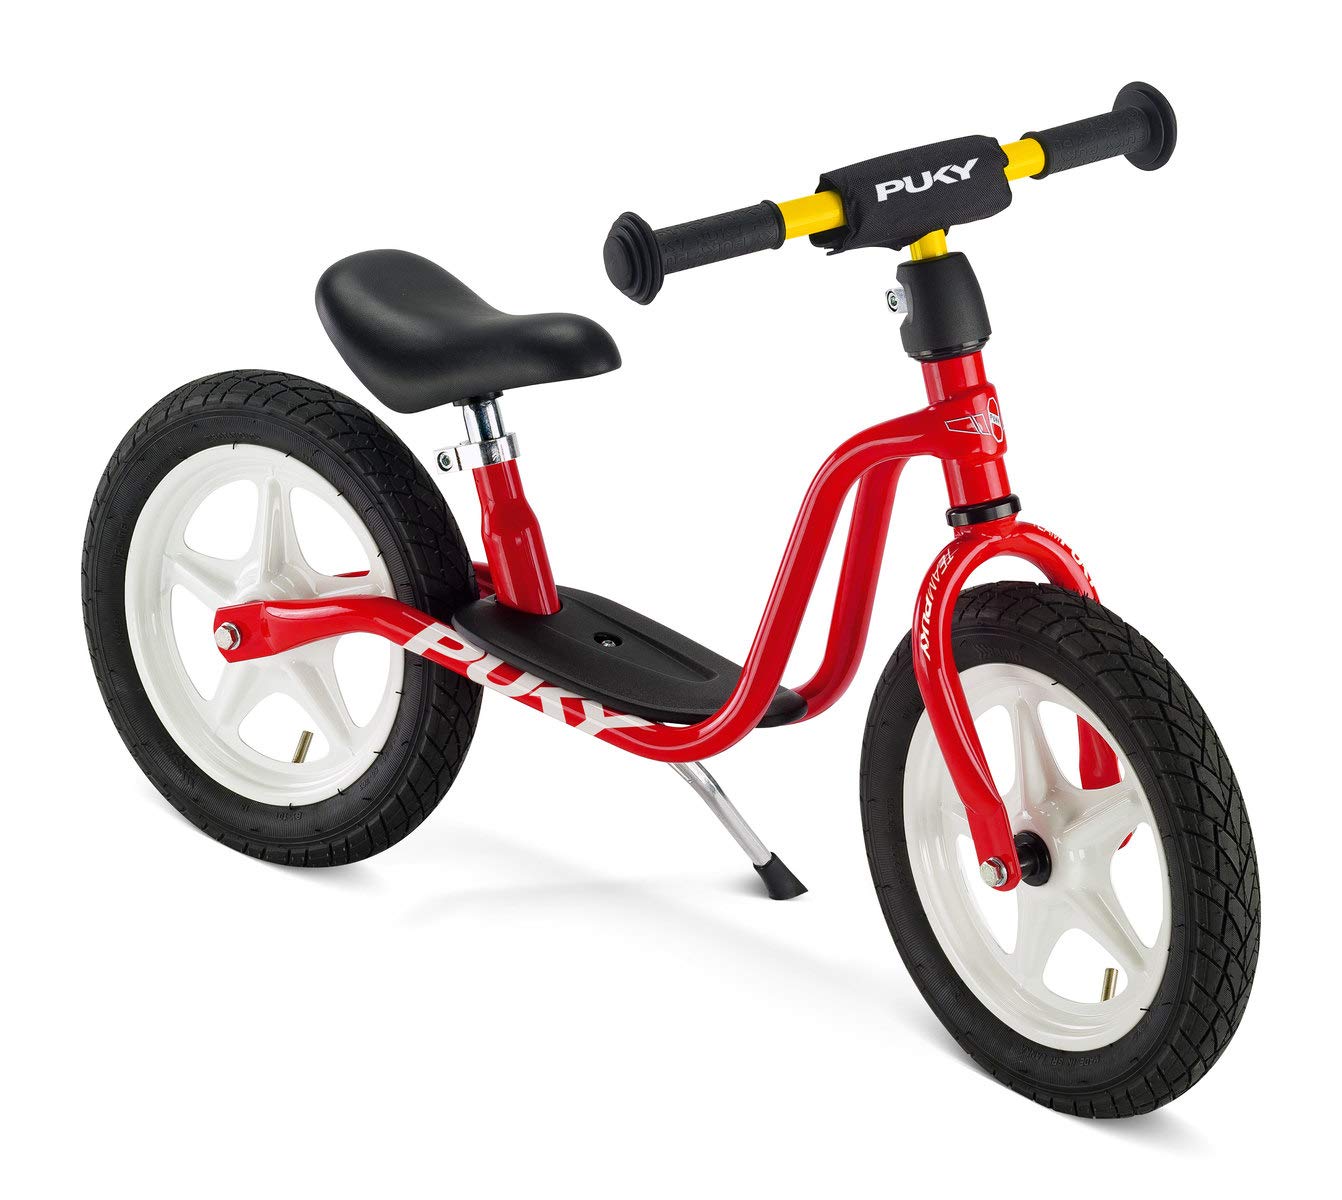 PUKY LR 1L | sicheres und stylisches Laufrad | höhenverstellbarer Lenker und Sattel | mit Luftbereifung | für Kinder ab 2,5 Jahren | PUKY Color